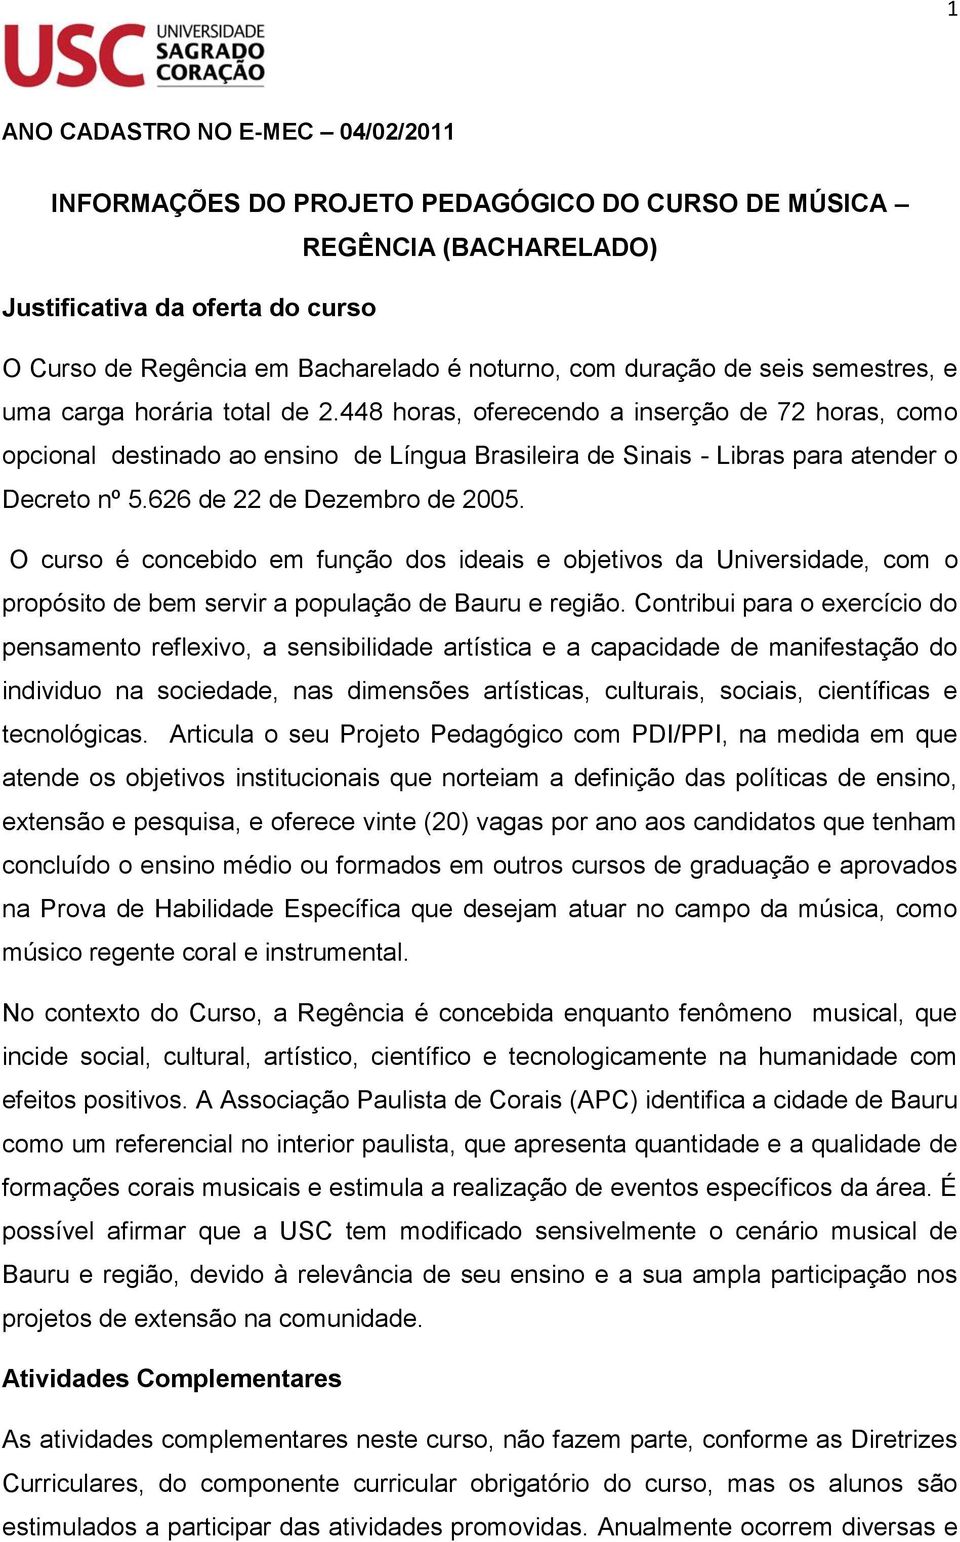 448 horas, oferecendo a inserção de 72 horas, como opcional destinado ao ensino de Língua Brasileira de Sinais - Libras para atender o Decreto nº 5.626 de 22 de Dezembro de 2005.